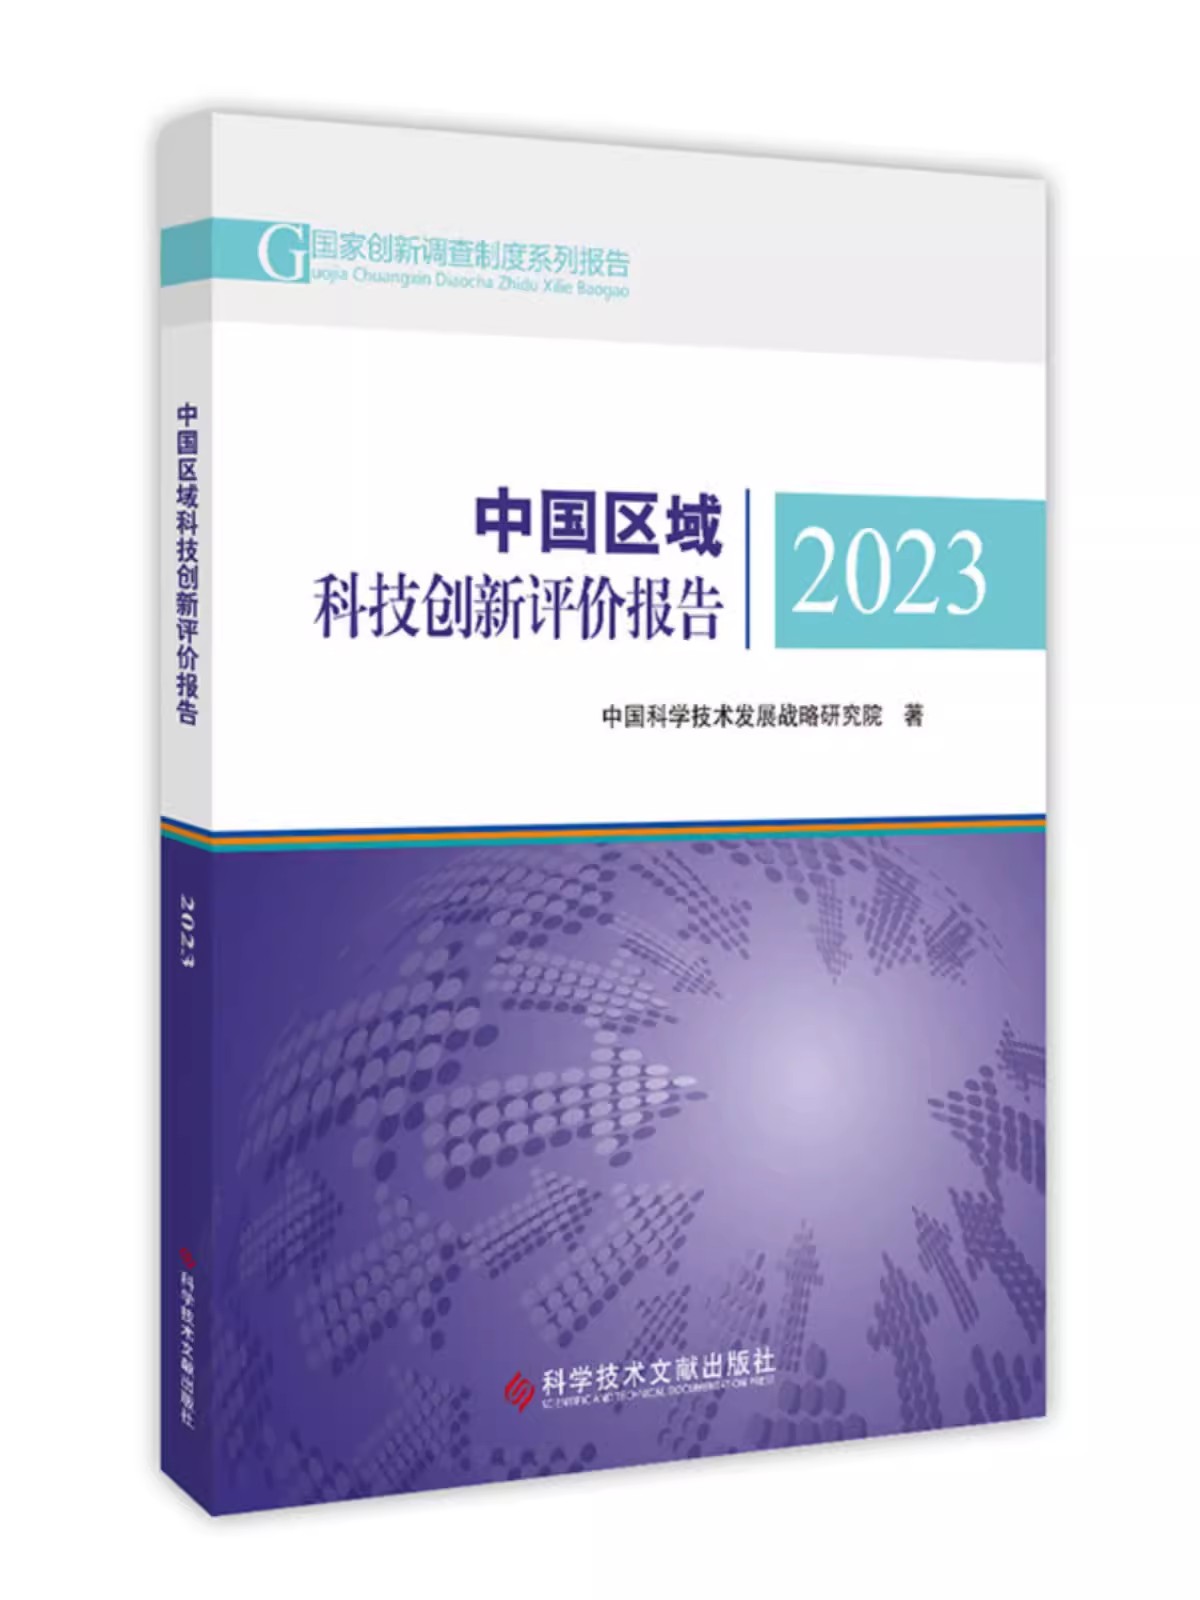 中国区域科技创新评价报告2023  中国科学技术发展战略研究院 科学技术文献出版社9787523507100